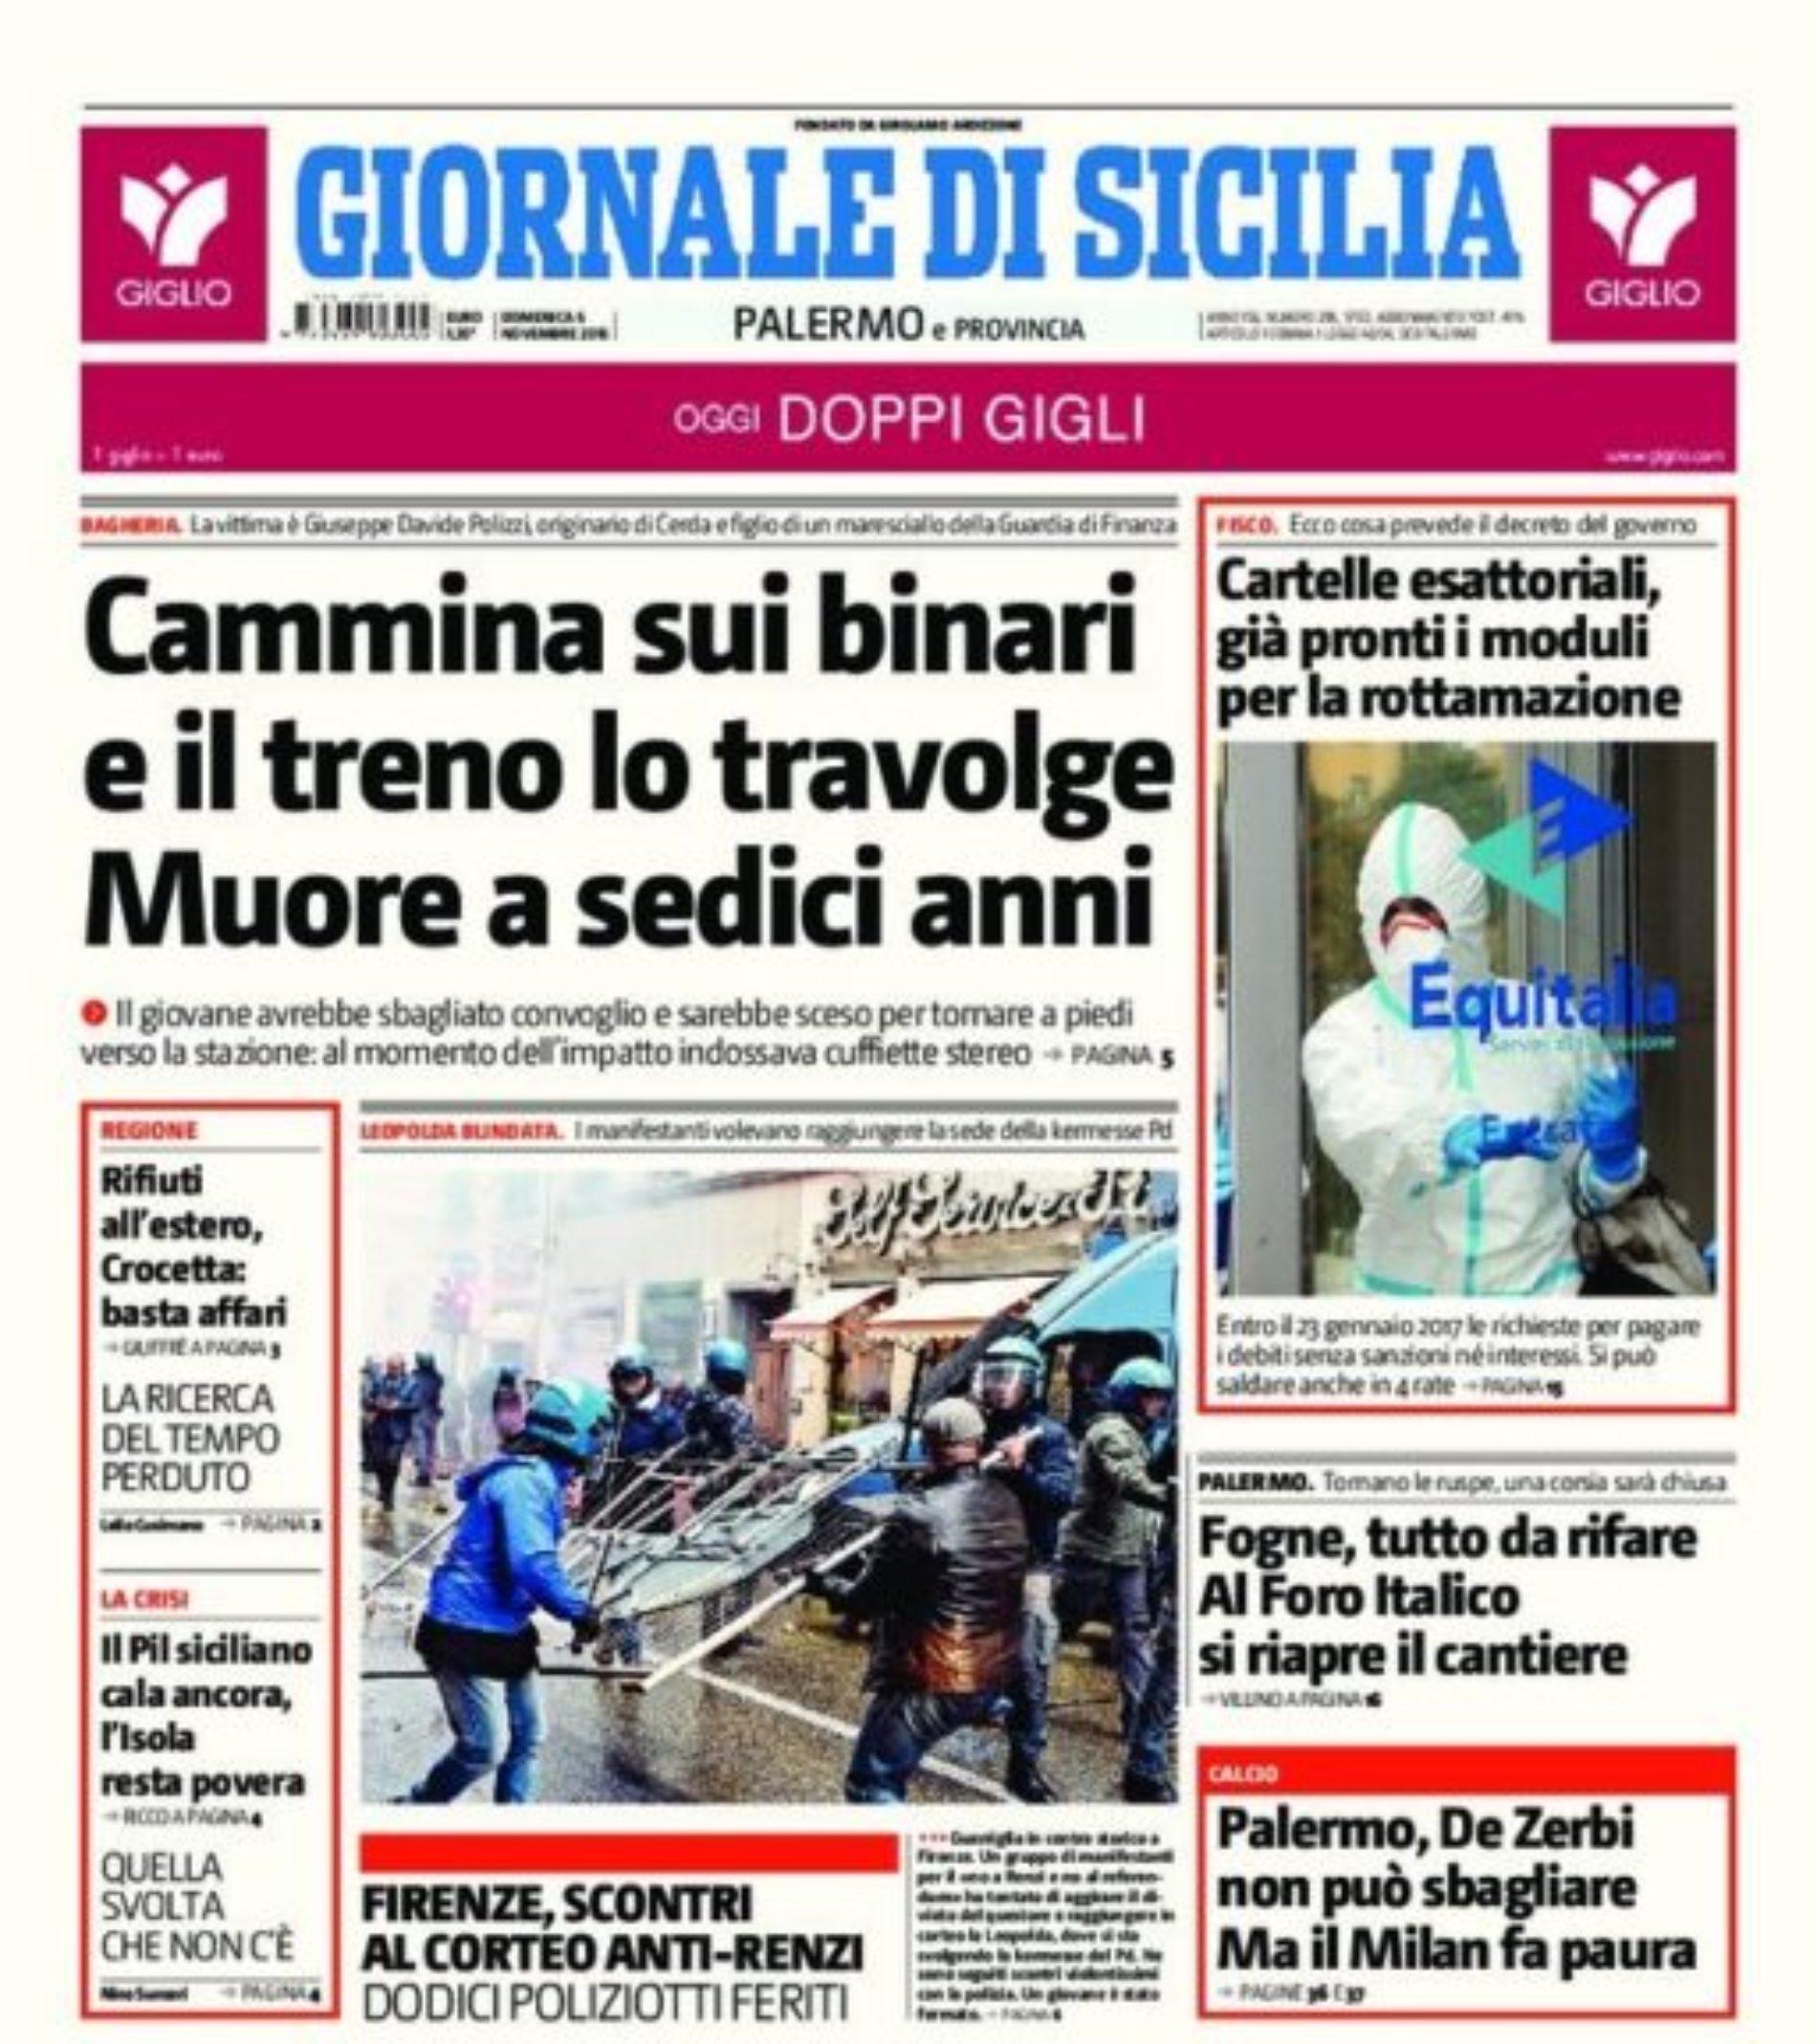 Collaboratori del Giornale di Sicilia chiedono incontro urgente con la direzione del giornale